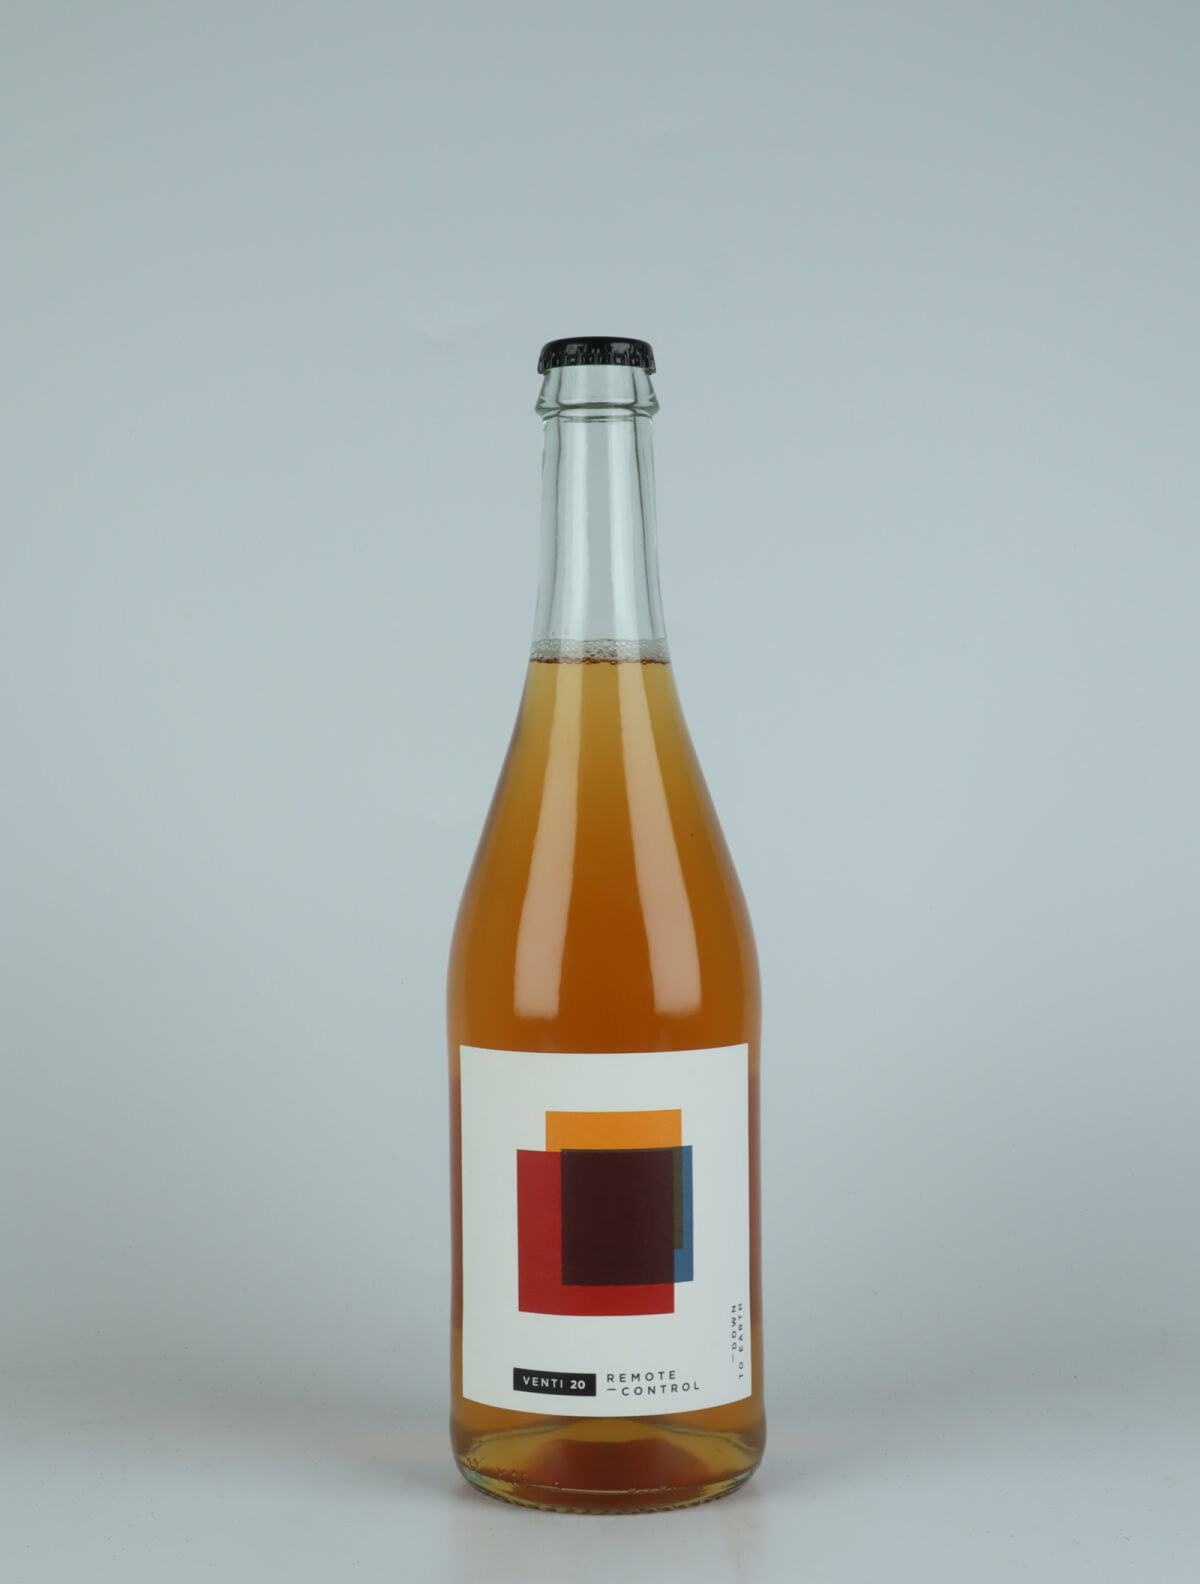 En flaske 2020 Remote Control Orange vin fra do.t.e Vini, Toscana i Italien